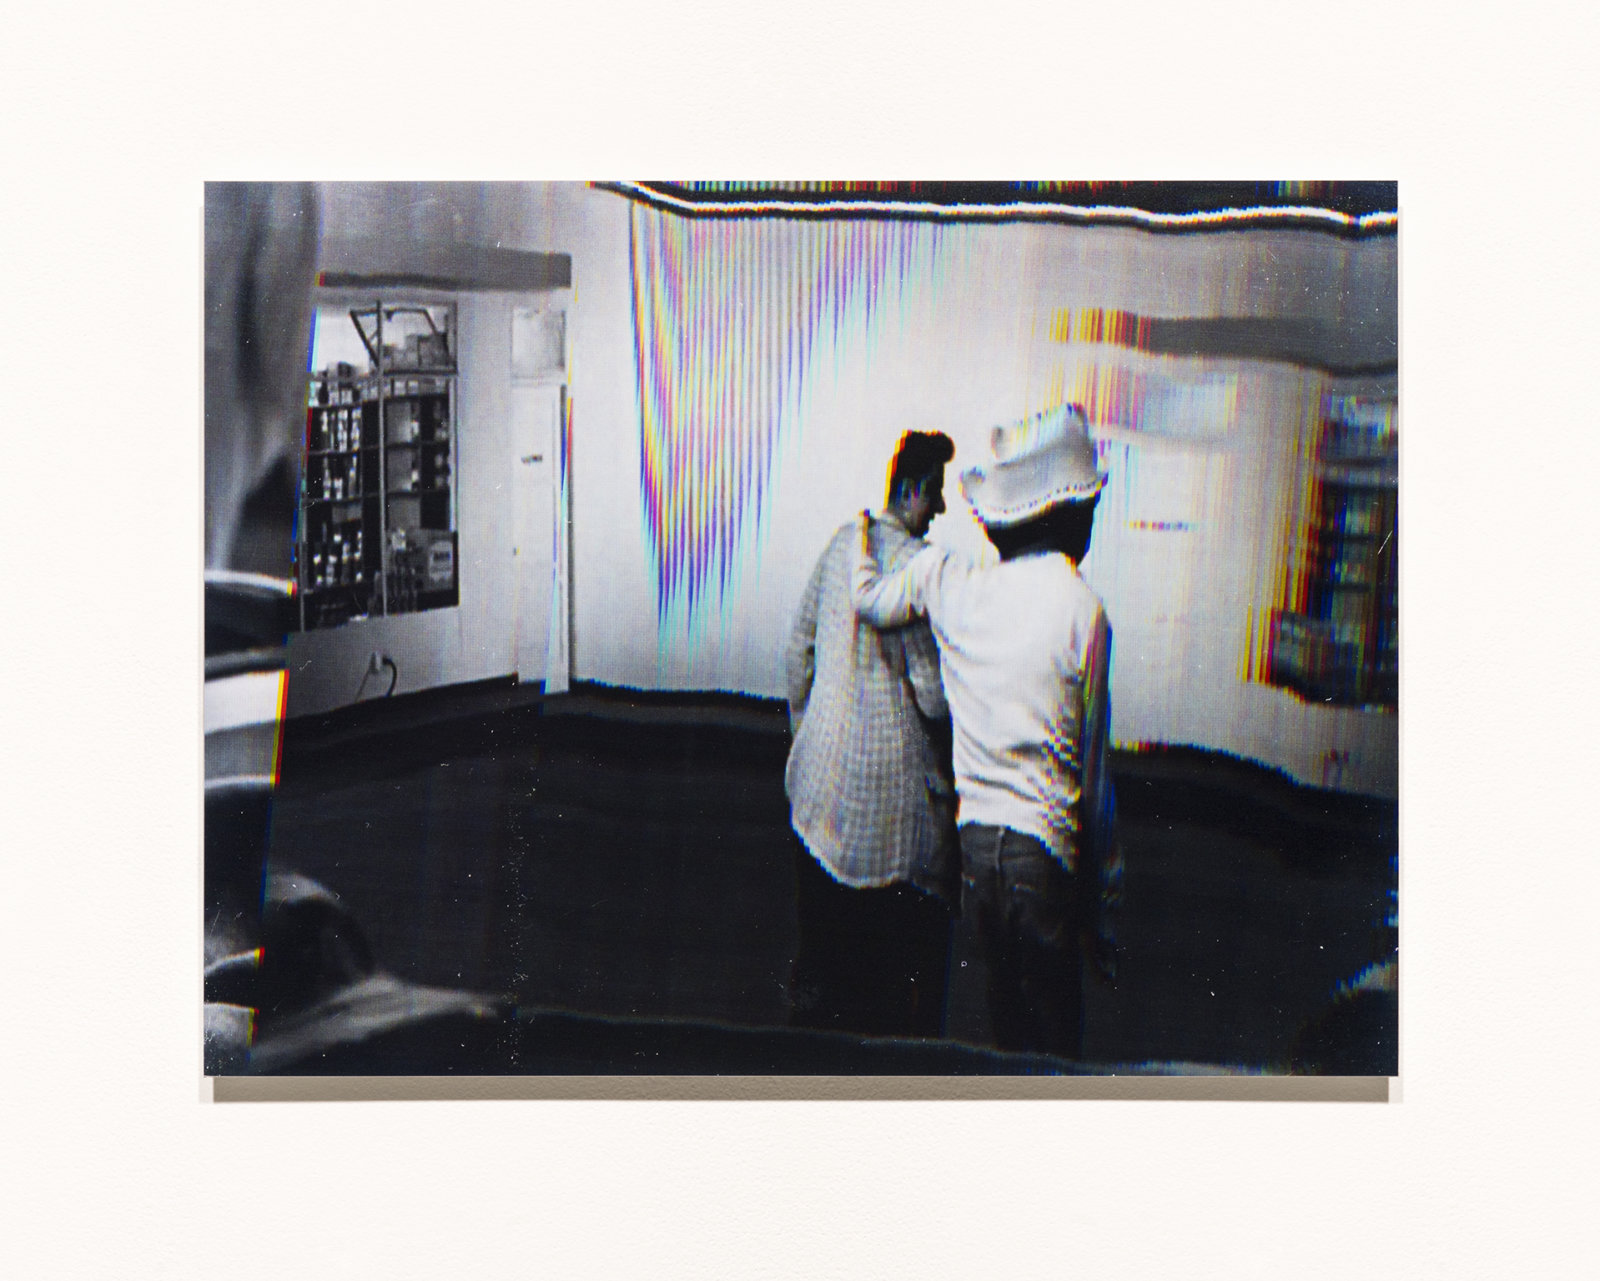 Raymond Boisjoly, Station to Station, 2014, 5 screen resolution lightjet print mounted on dibond, each 18 x 24 in. (46 x 61 cm)